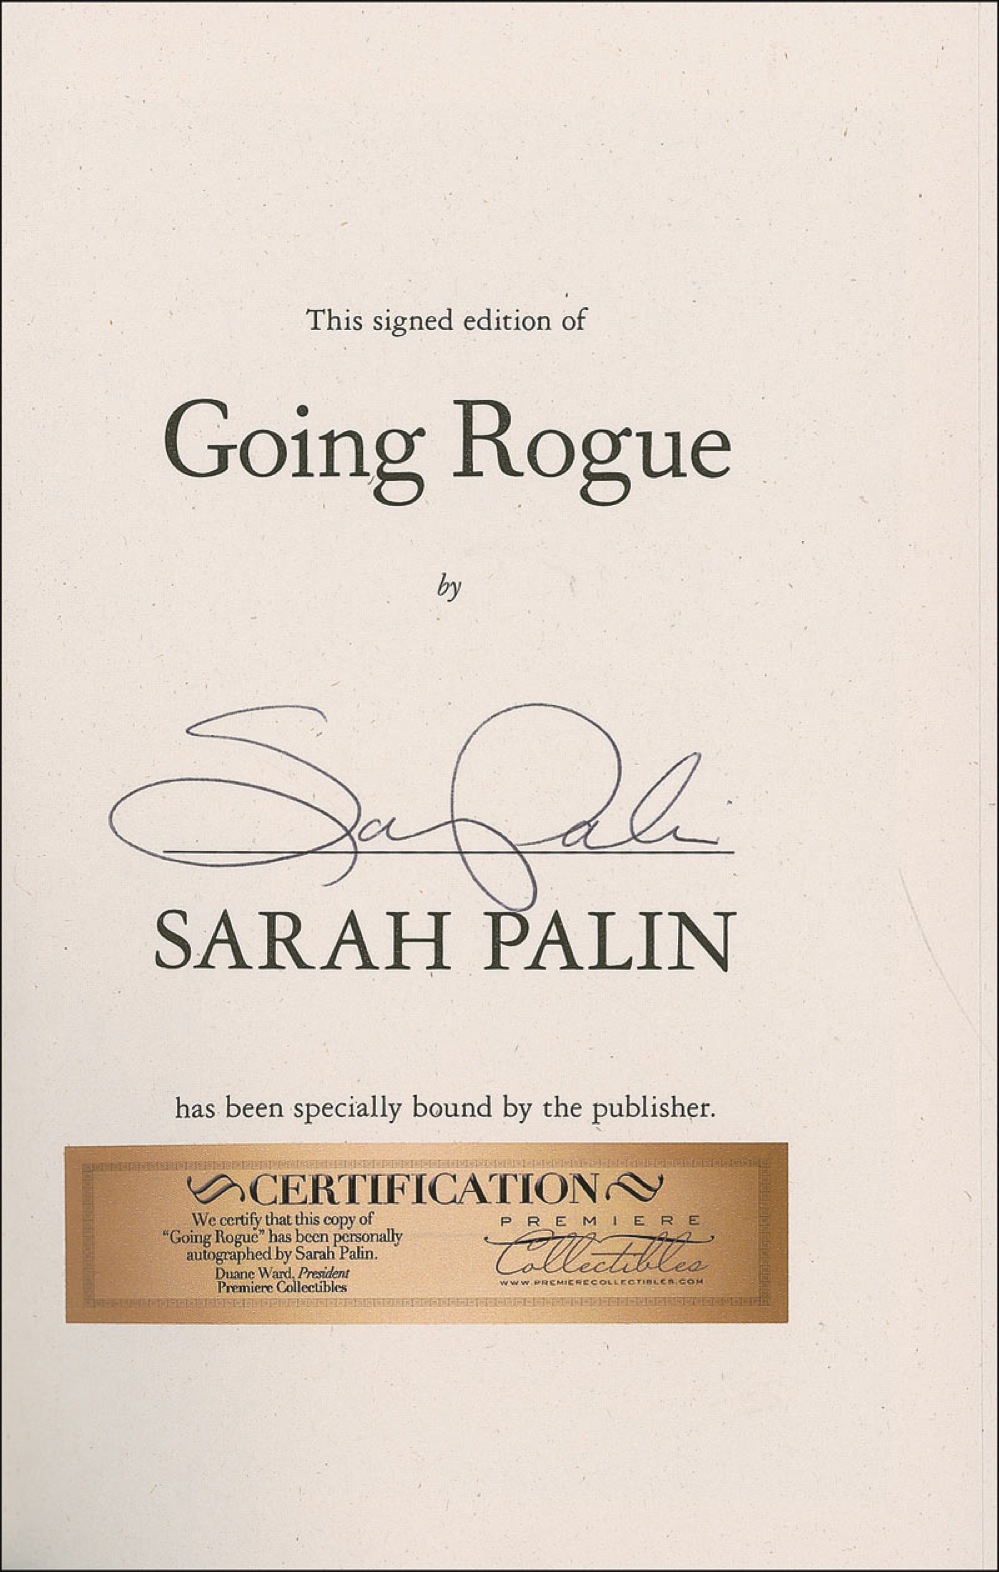 Lot #332 Sarah Palin